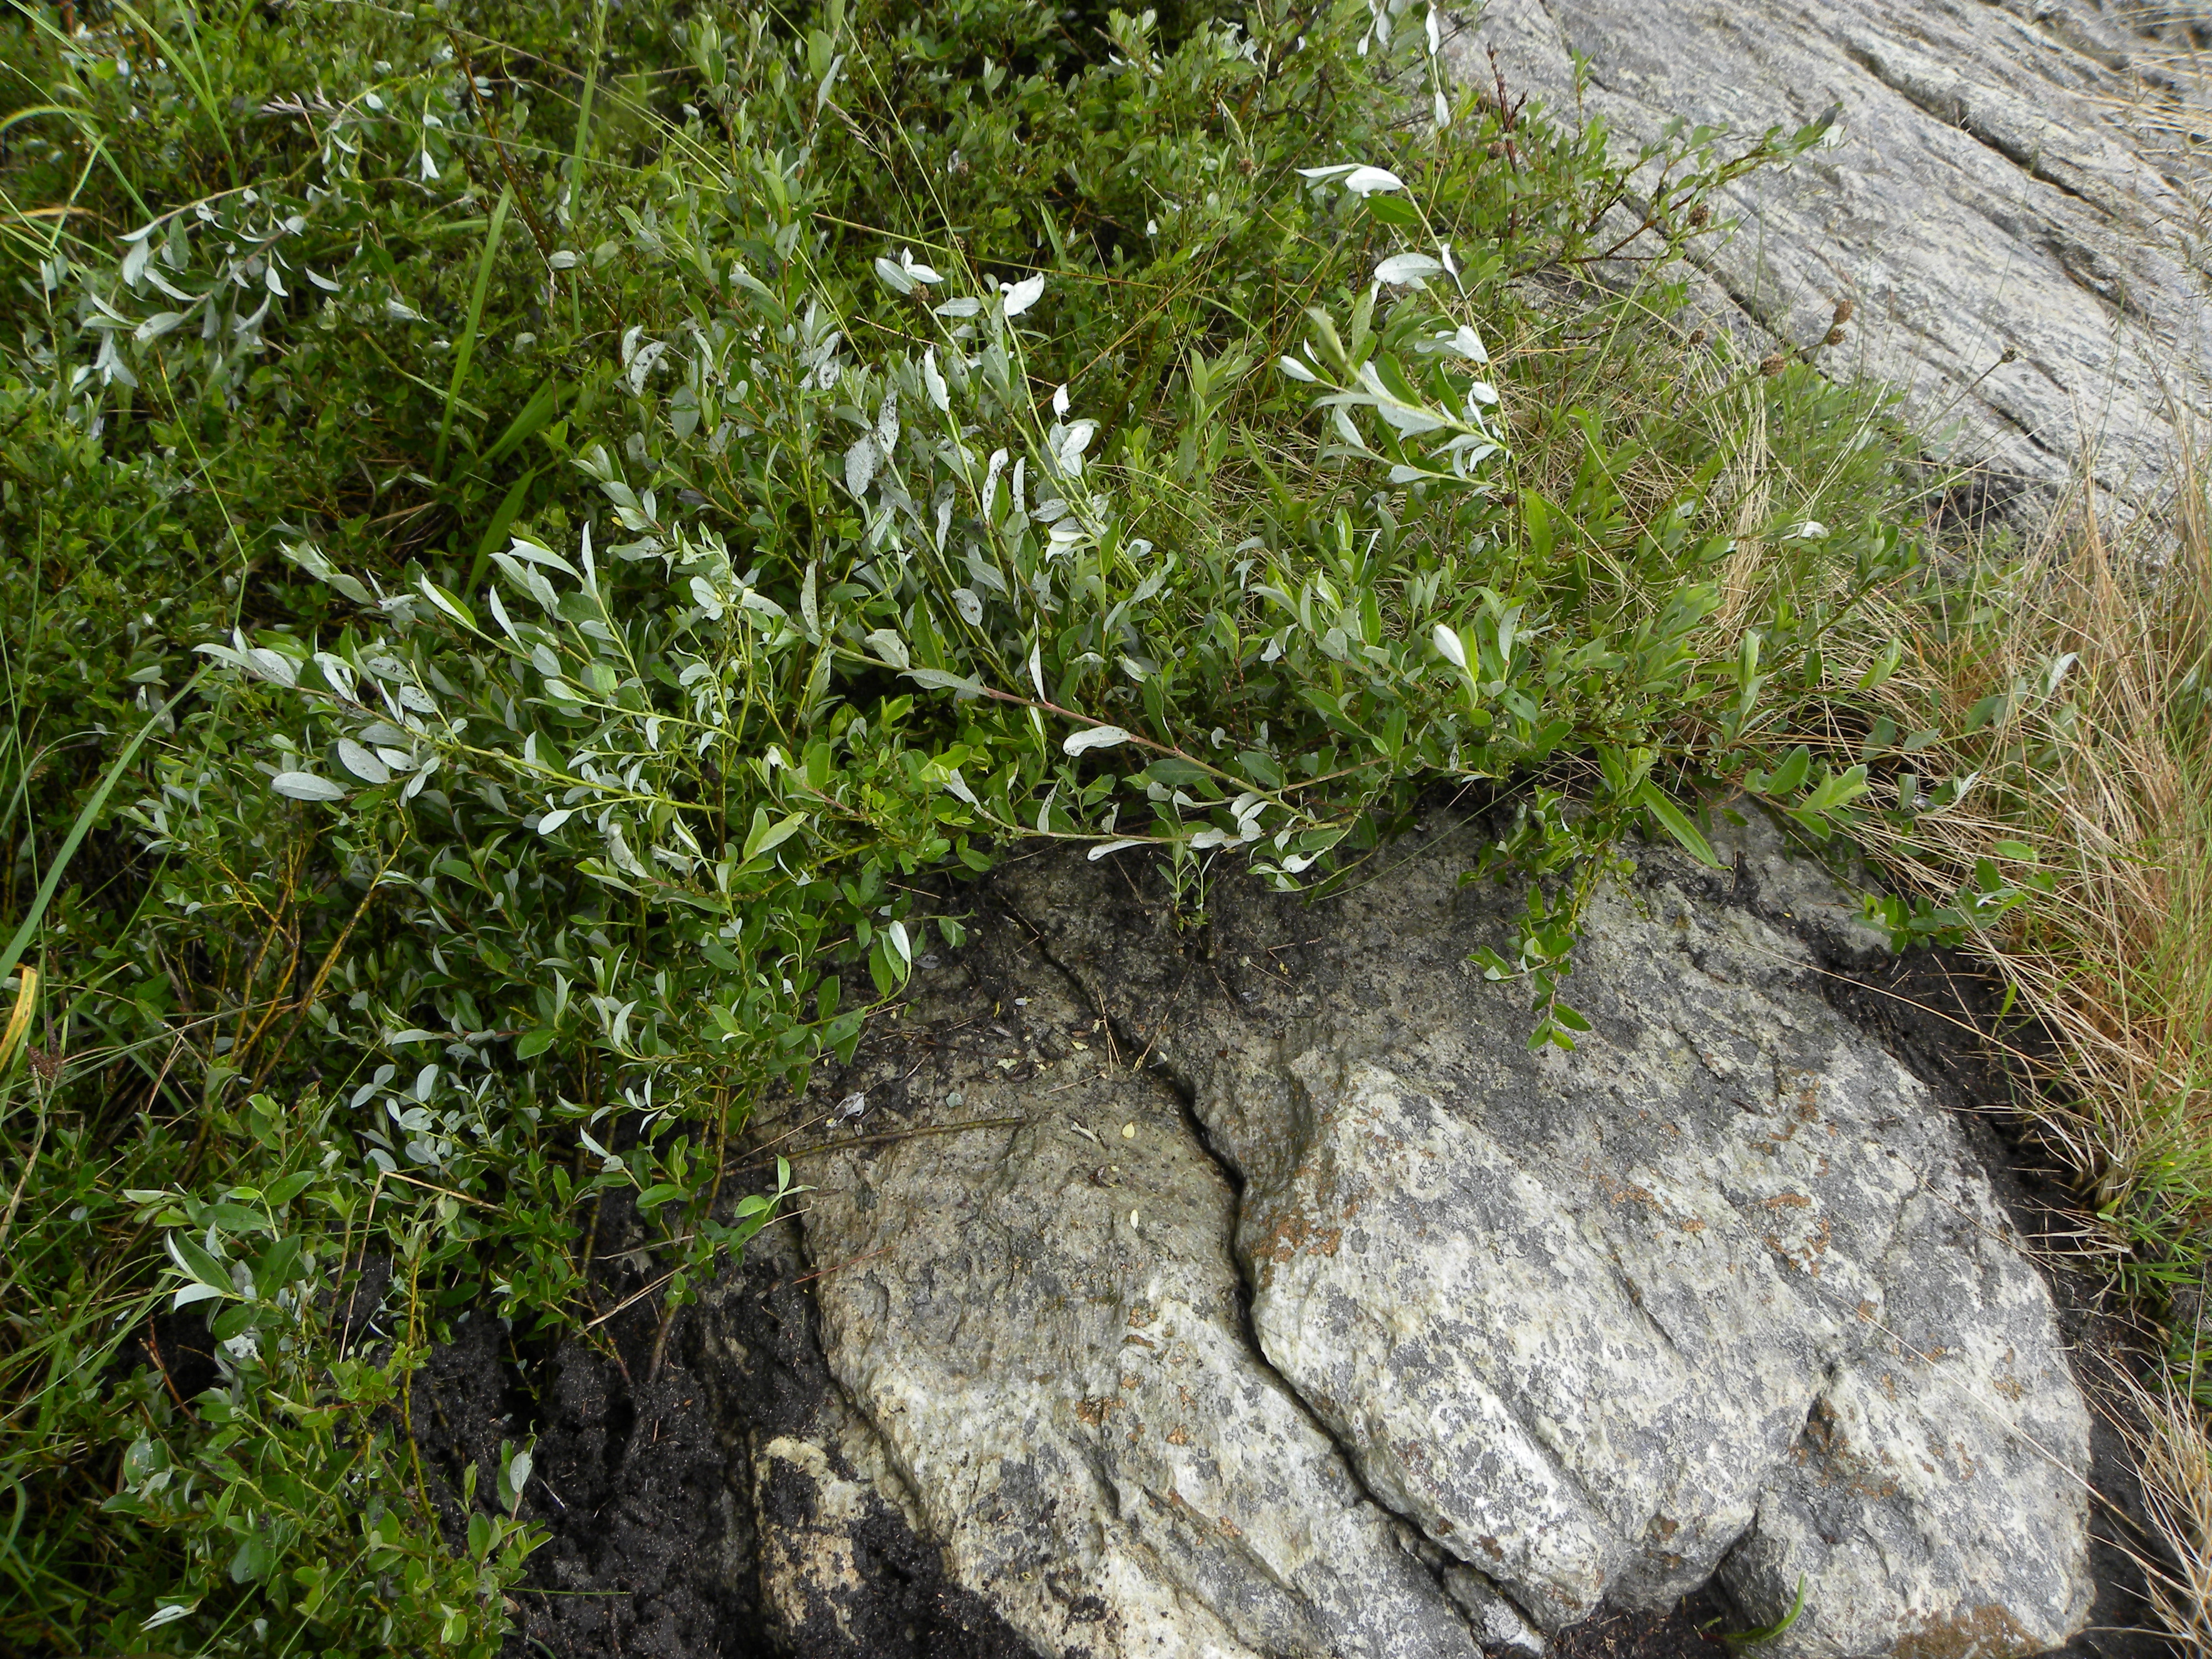 Plantelus: Parthenolecanium corni.